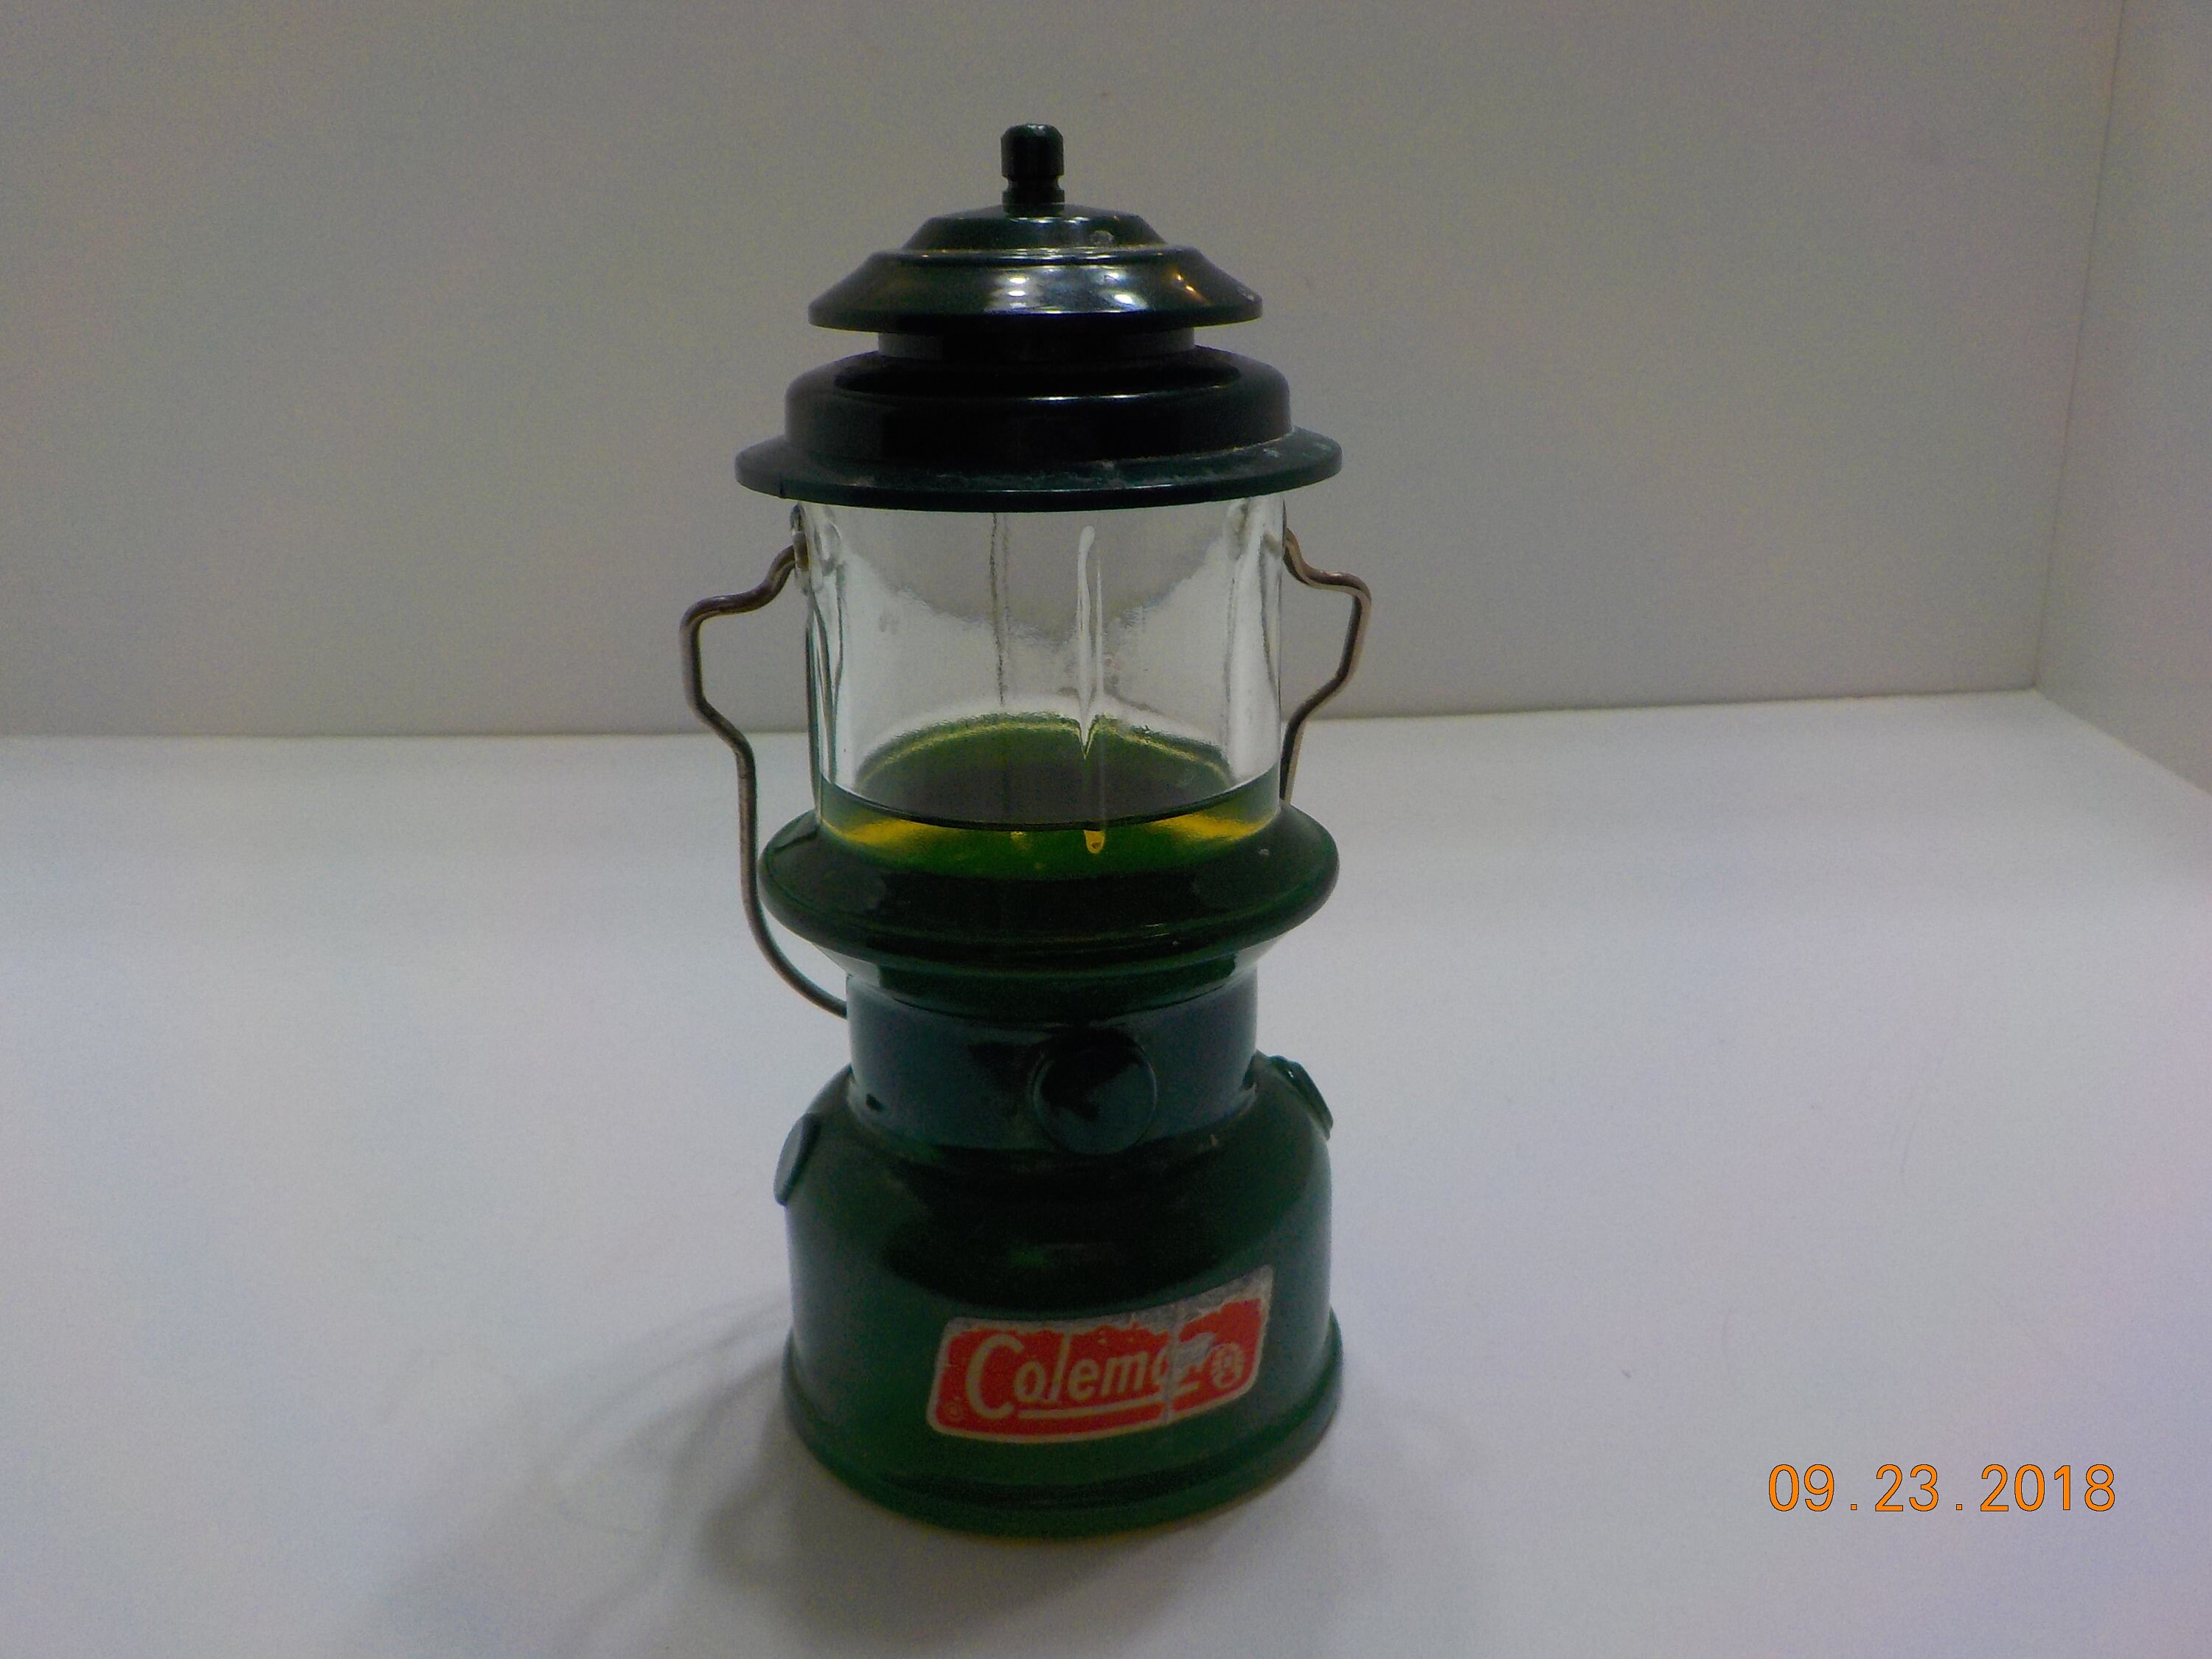 Avon coleman lantern